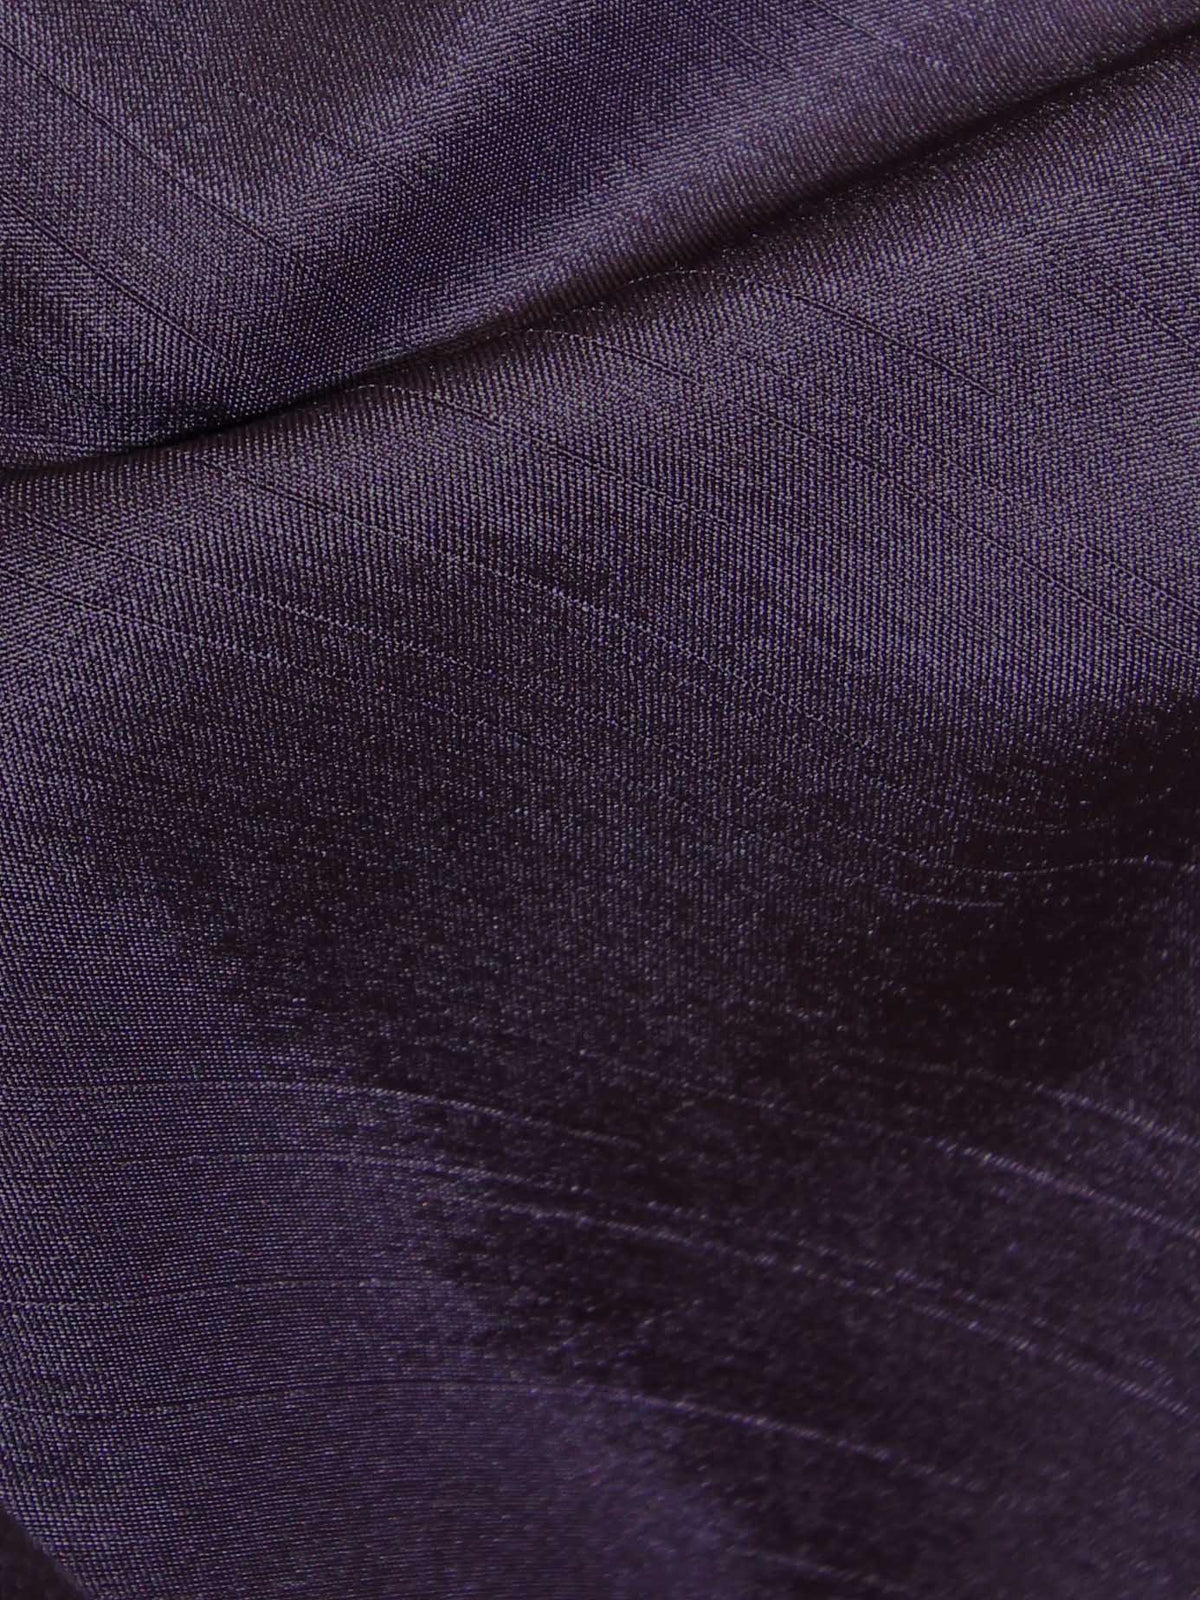 Dupion en satin de polyester violet foncé - Clarté